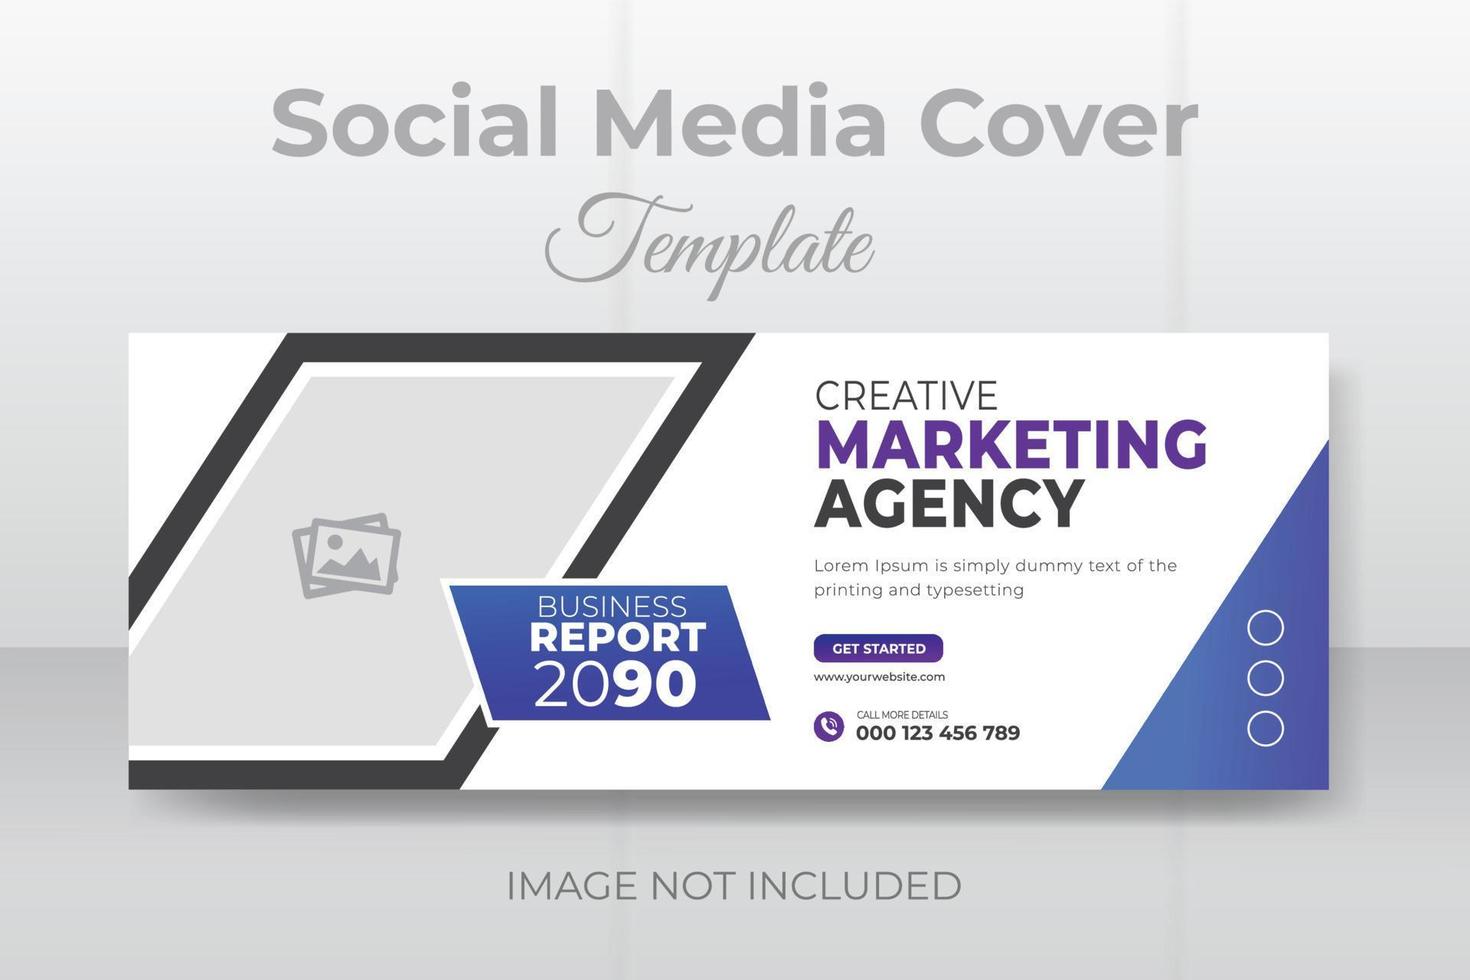 plantilla de banner web de portada de redes sociales de marketing digital vector